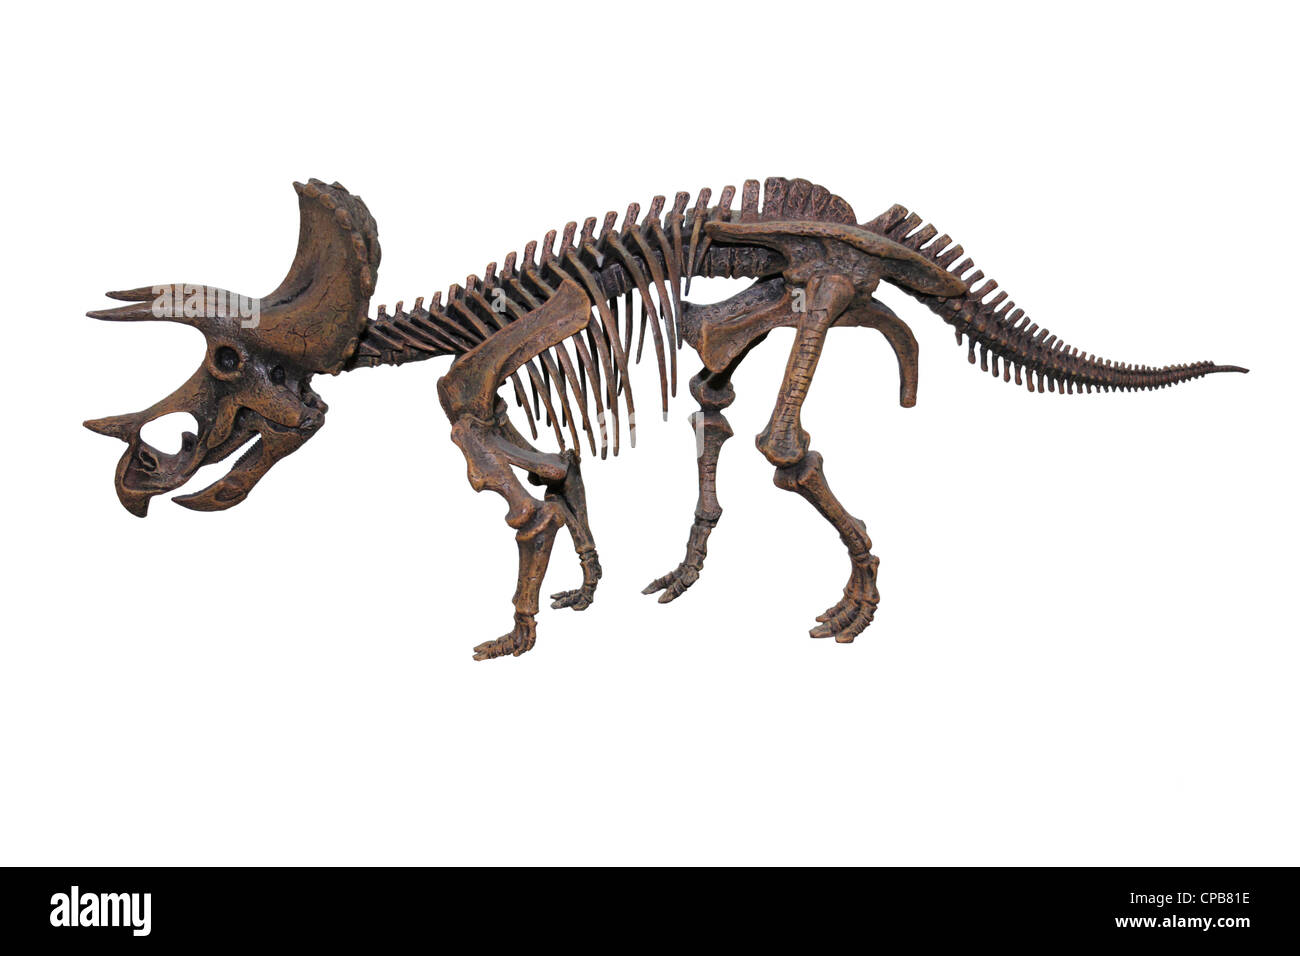 Skeleton Model Of The Dinosaur Triceratops horridus Stock Photo